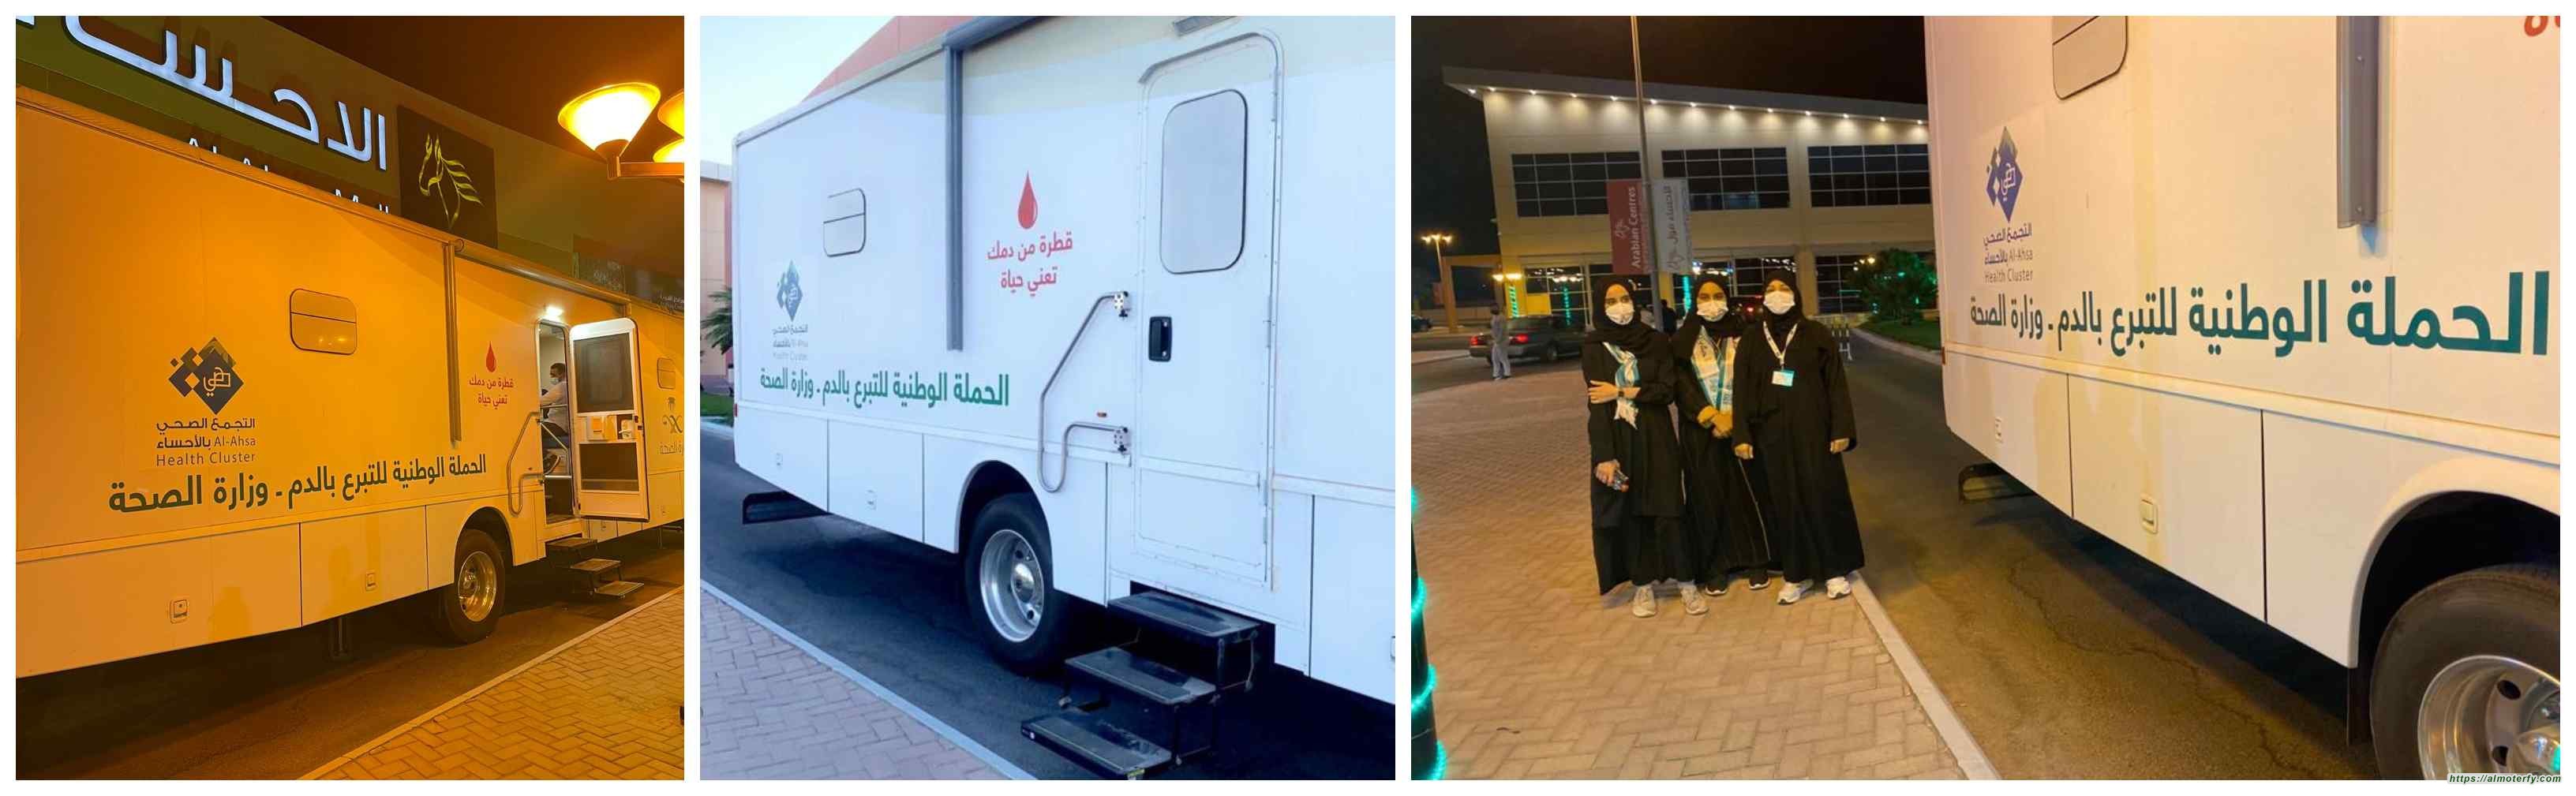 بالتعاون مع التجمع الصحي بالأحساء تقنية البنات بالأحساء تنظم حملة التبرع بالدم لمنسوبيها